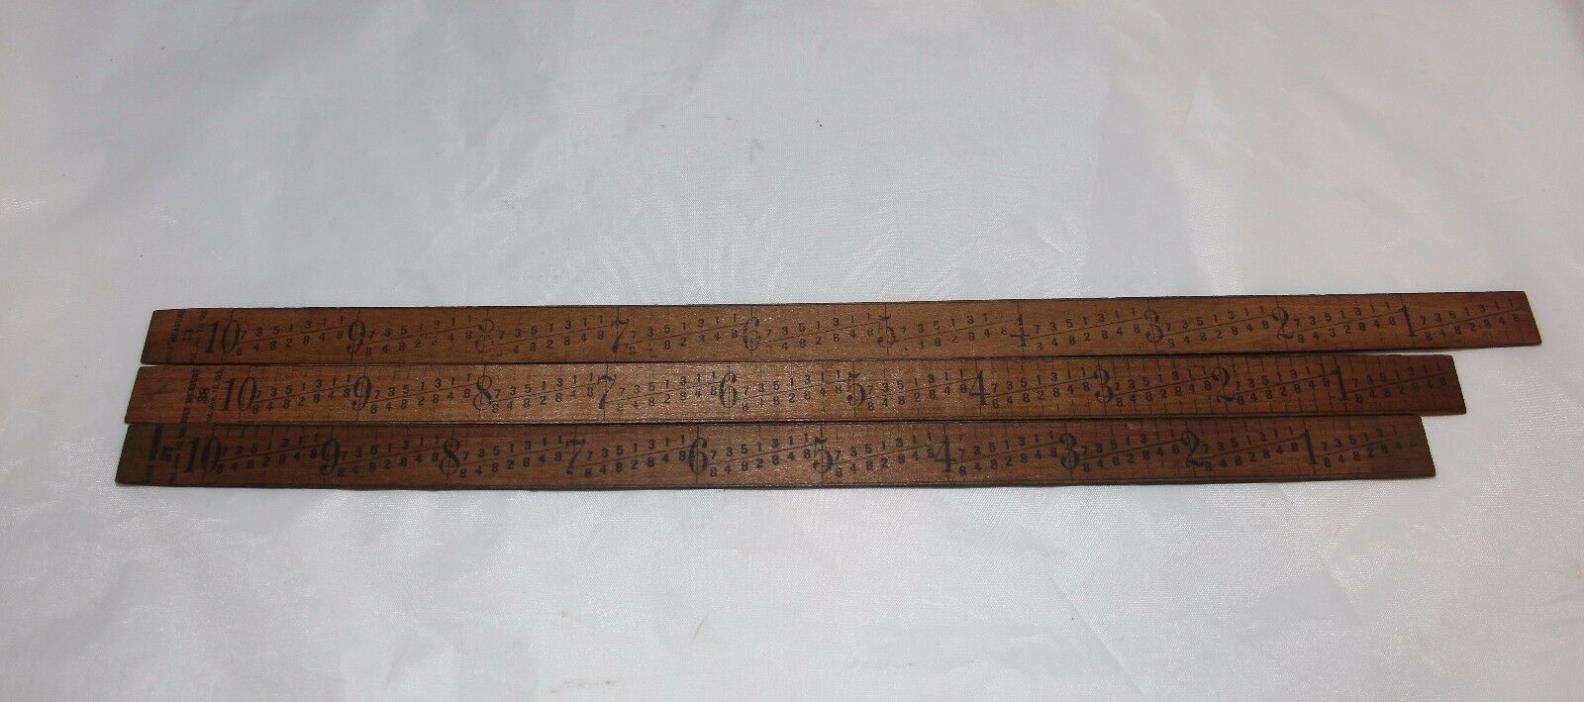 Vintage Wooden Dressmakers Bust Measurement Ruler Tool Lot of 3